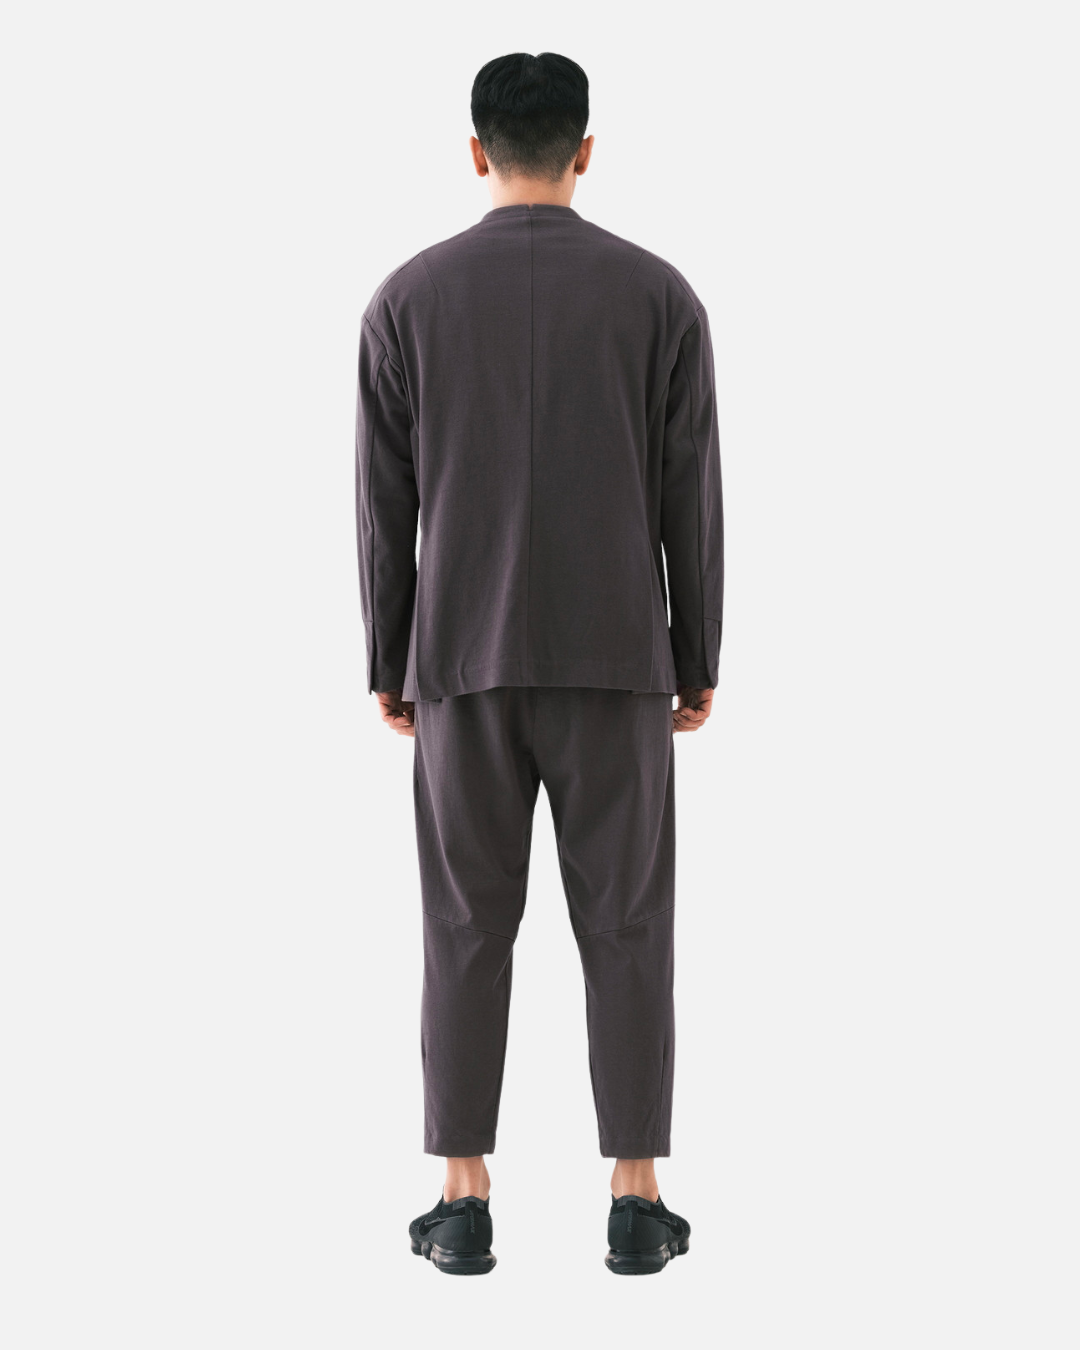 Cloud Nine Trousers - Mauve Grey - XL